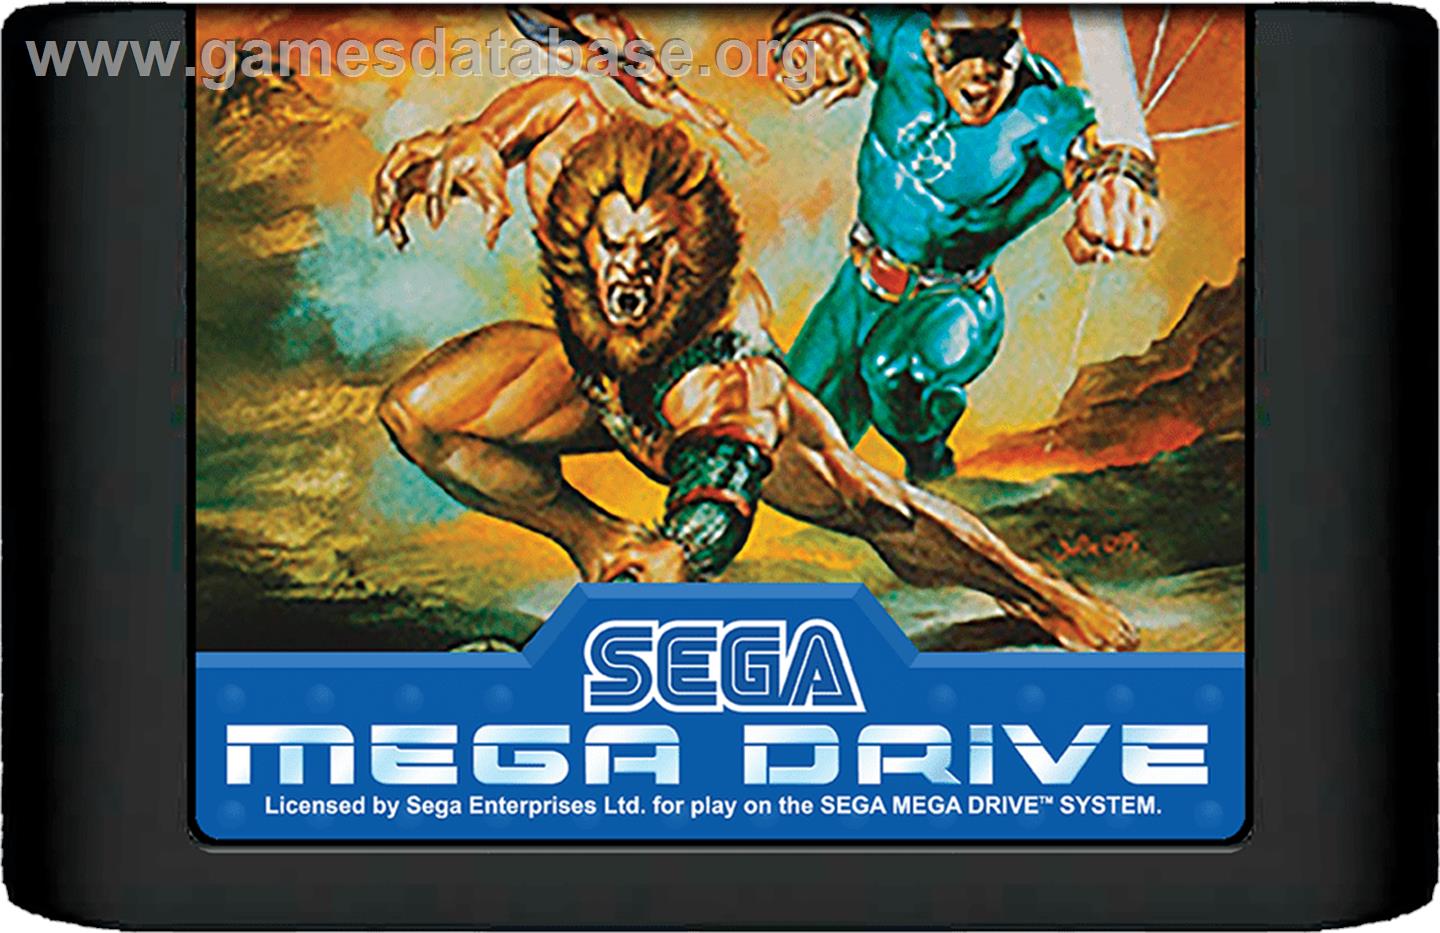 Eternal Champions - Sega Genesis - Artwork - Cartridge